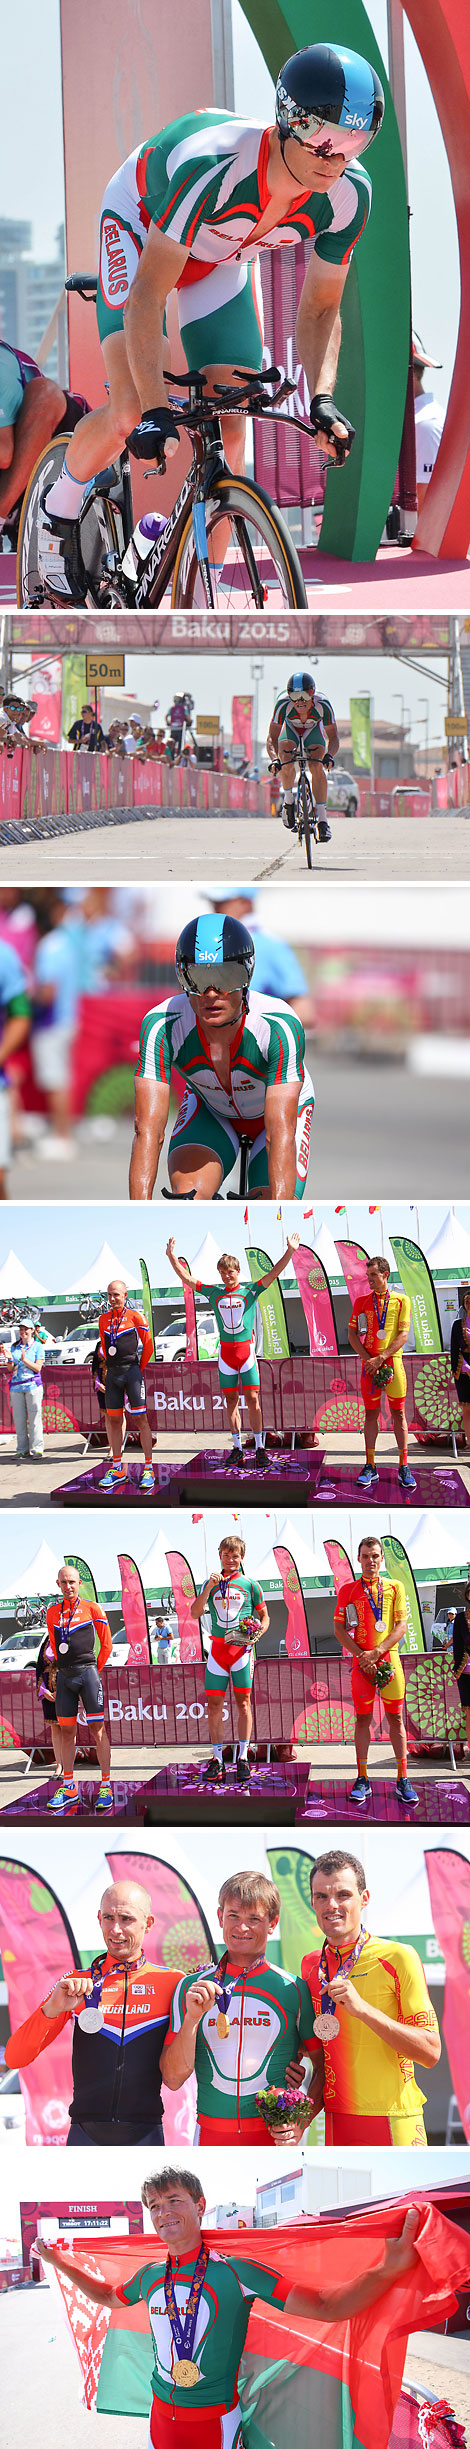 Белорус Василий Кириенко завоевал золото Евроигр в индивидуальной велогонке с раздельным стартом